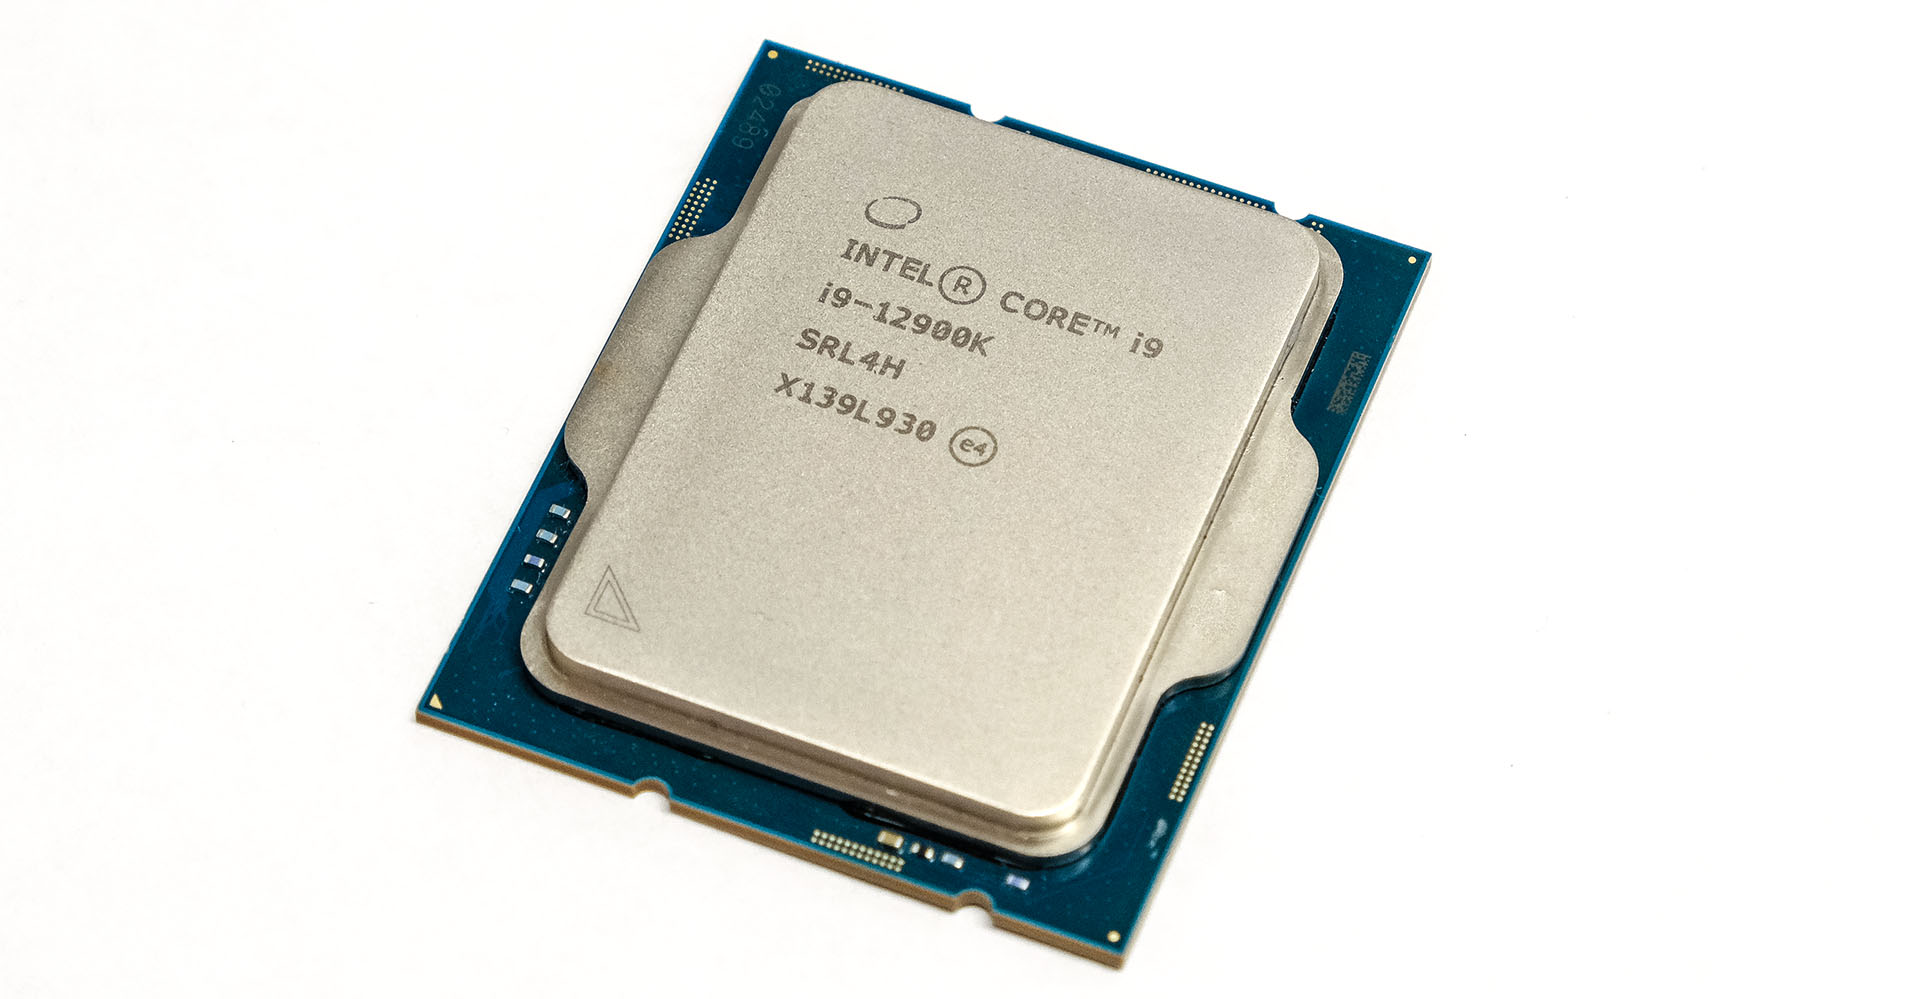  Intel Core i9-12900K Desktop Processor & ASUS ROG